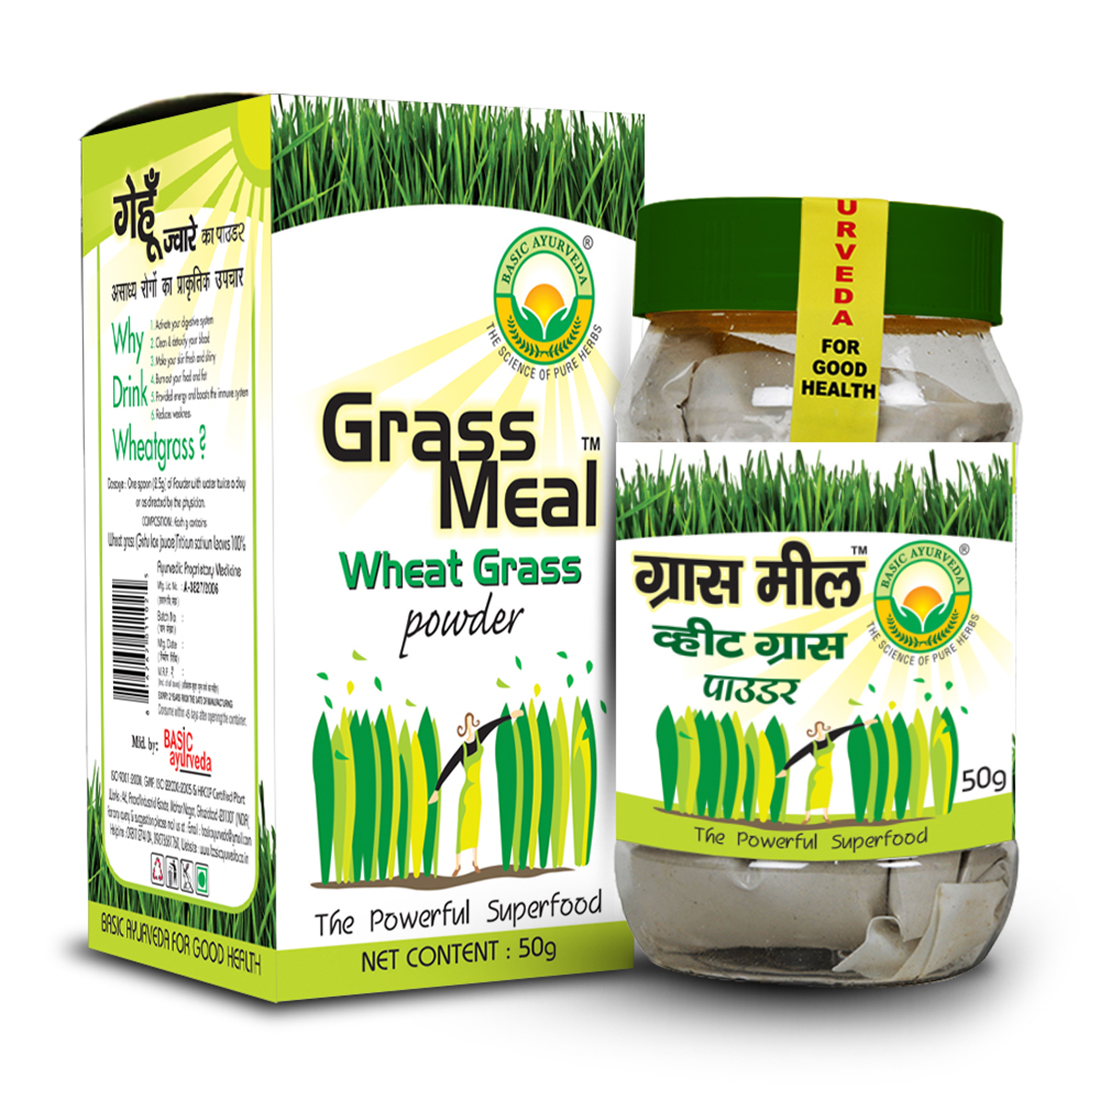 Grass Meal (Wheat Grass Powder)